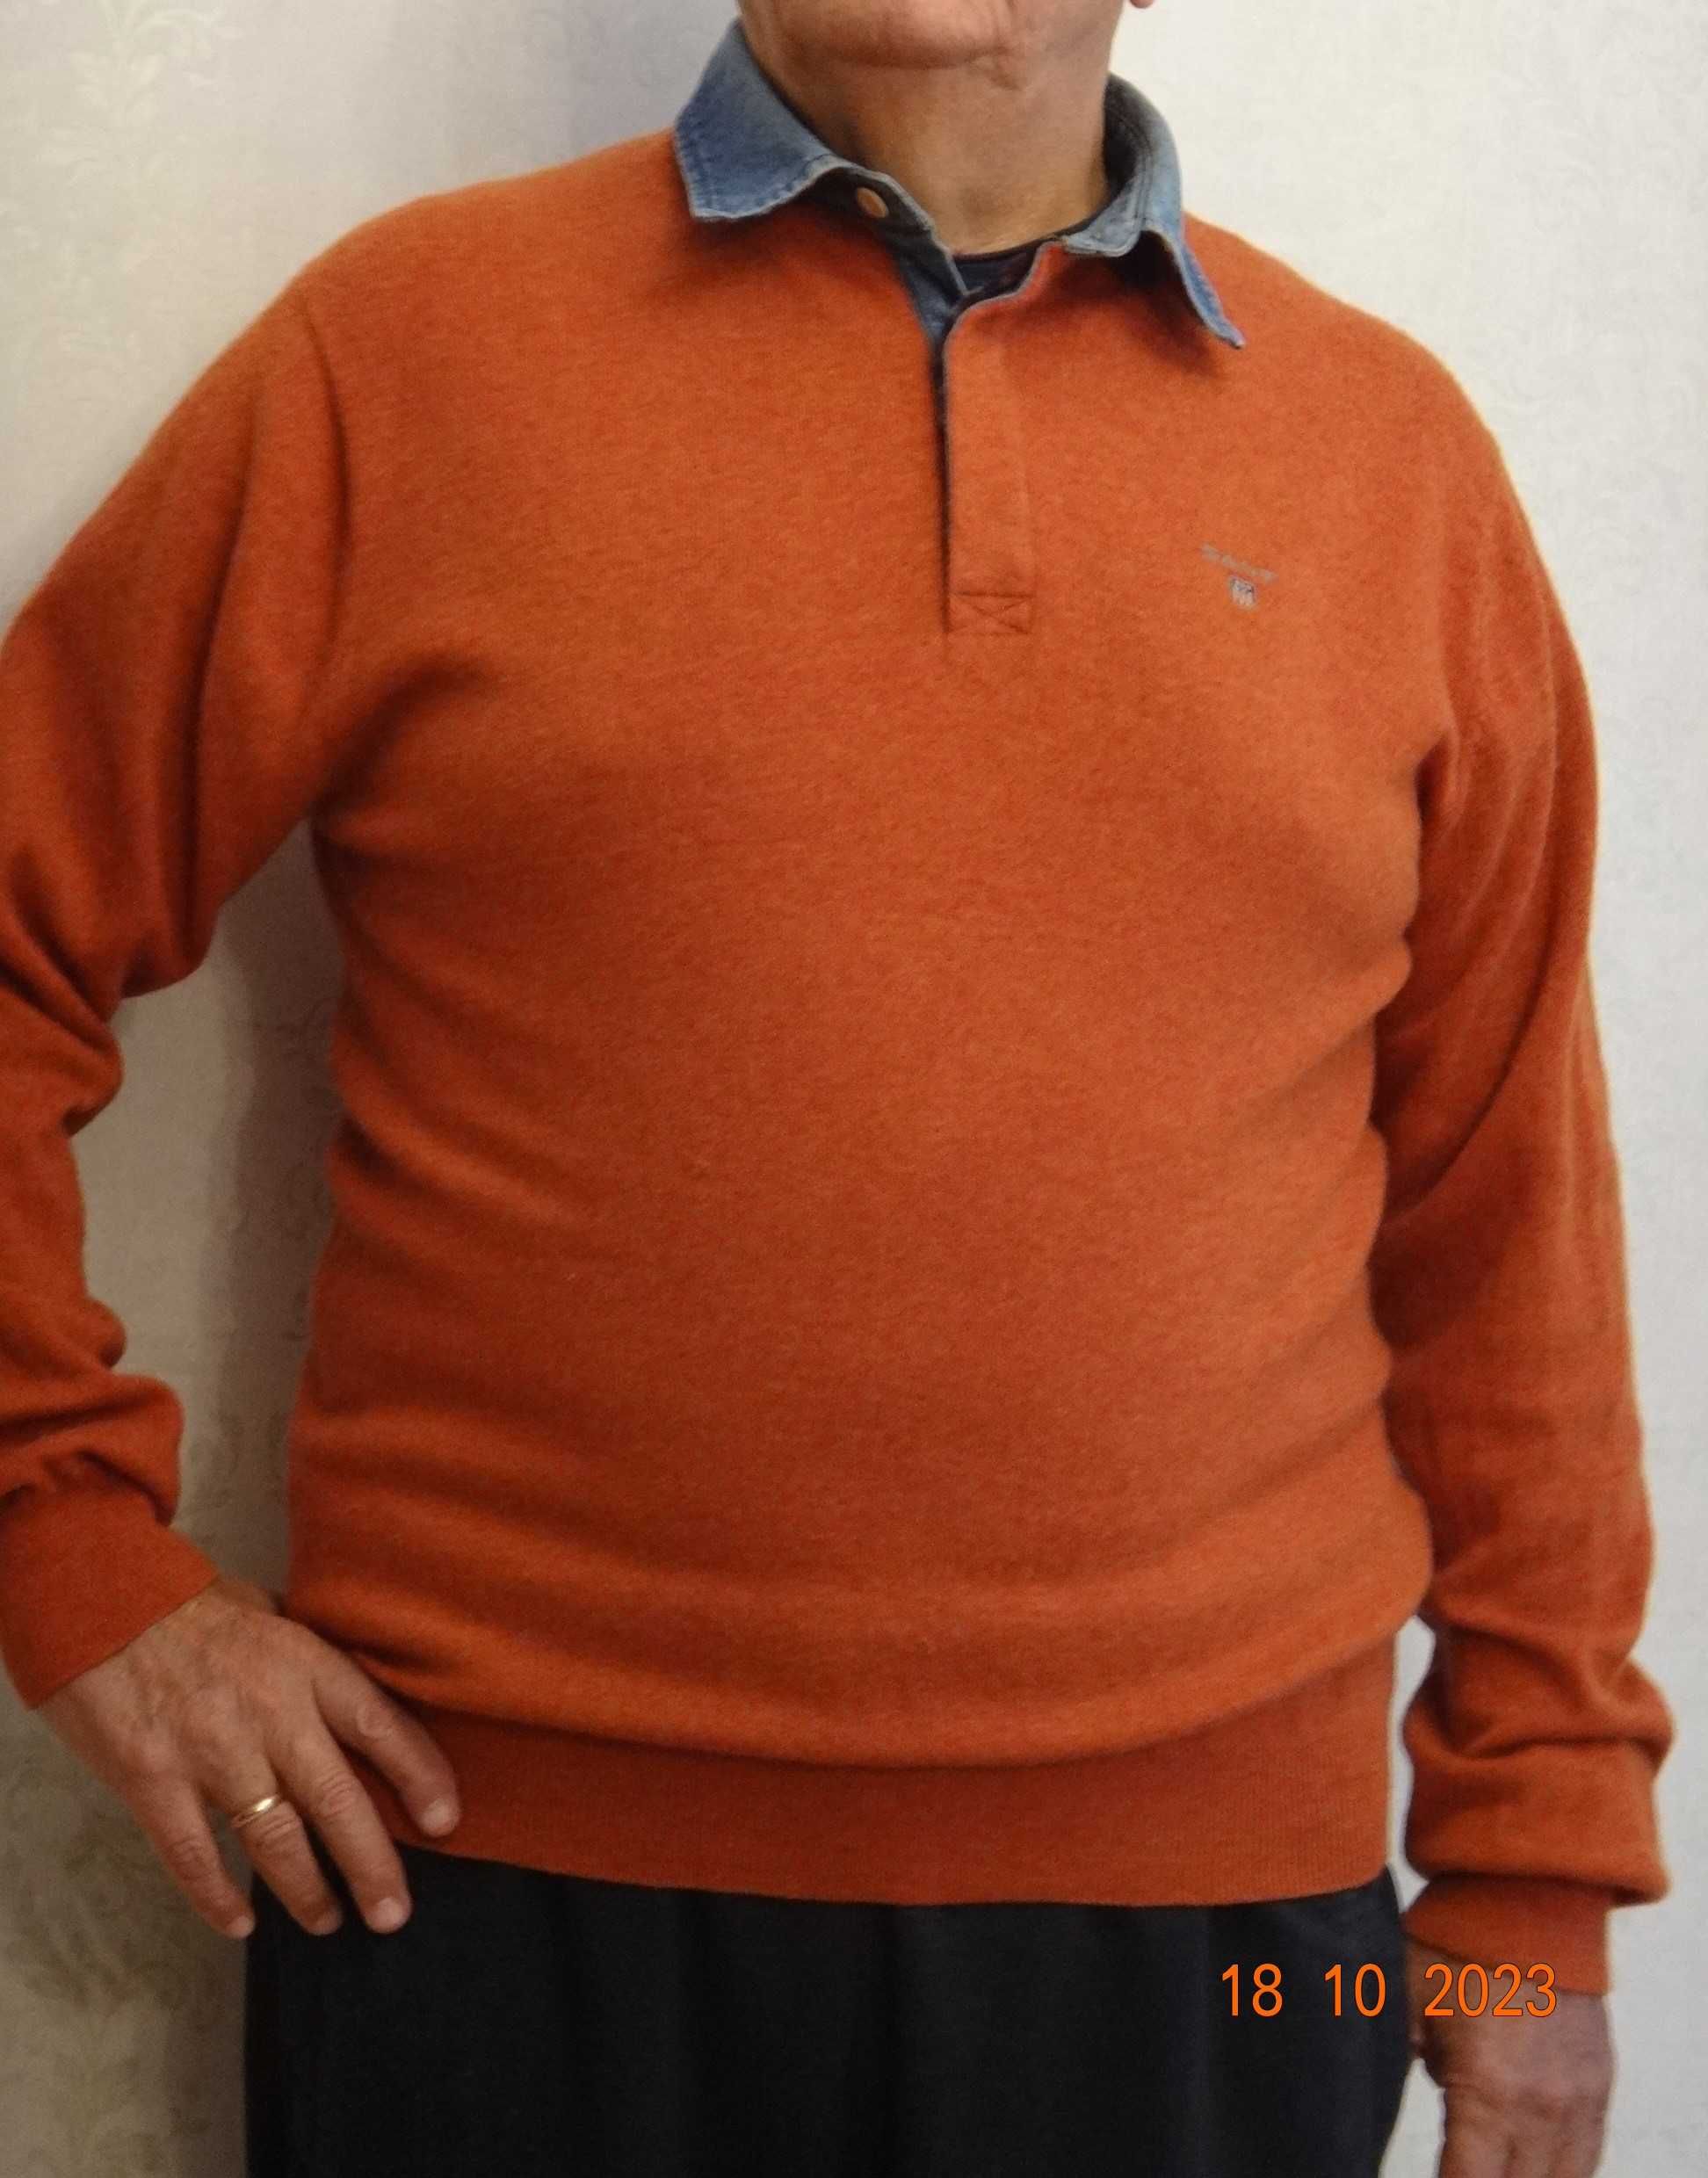 Мужской свитер с воротником – поло фирмы Gant и турецкий свитер.